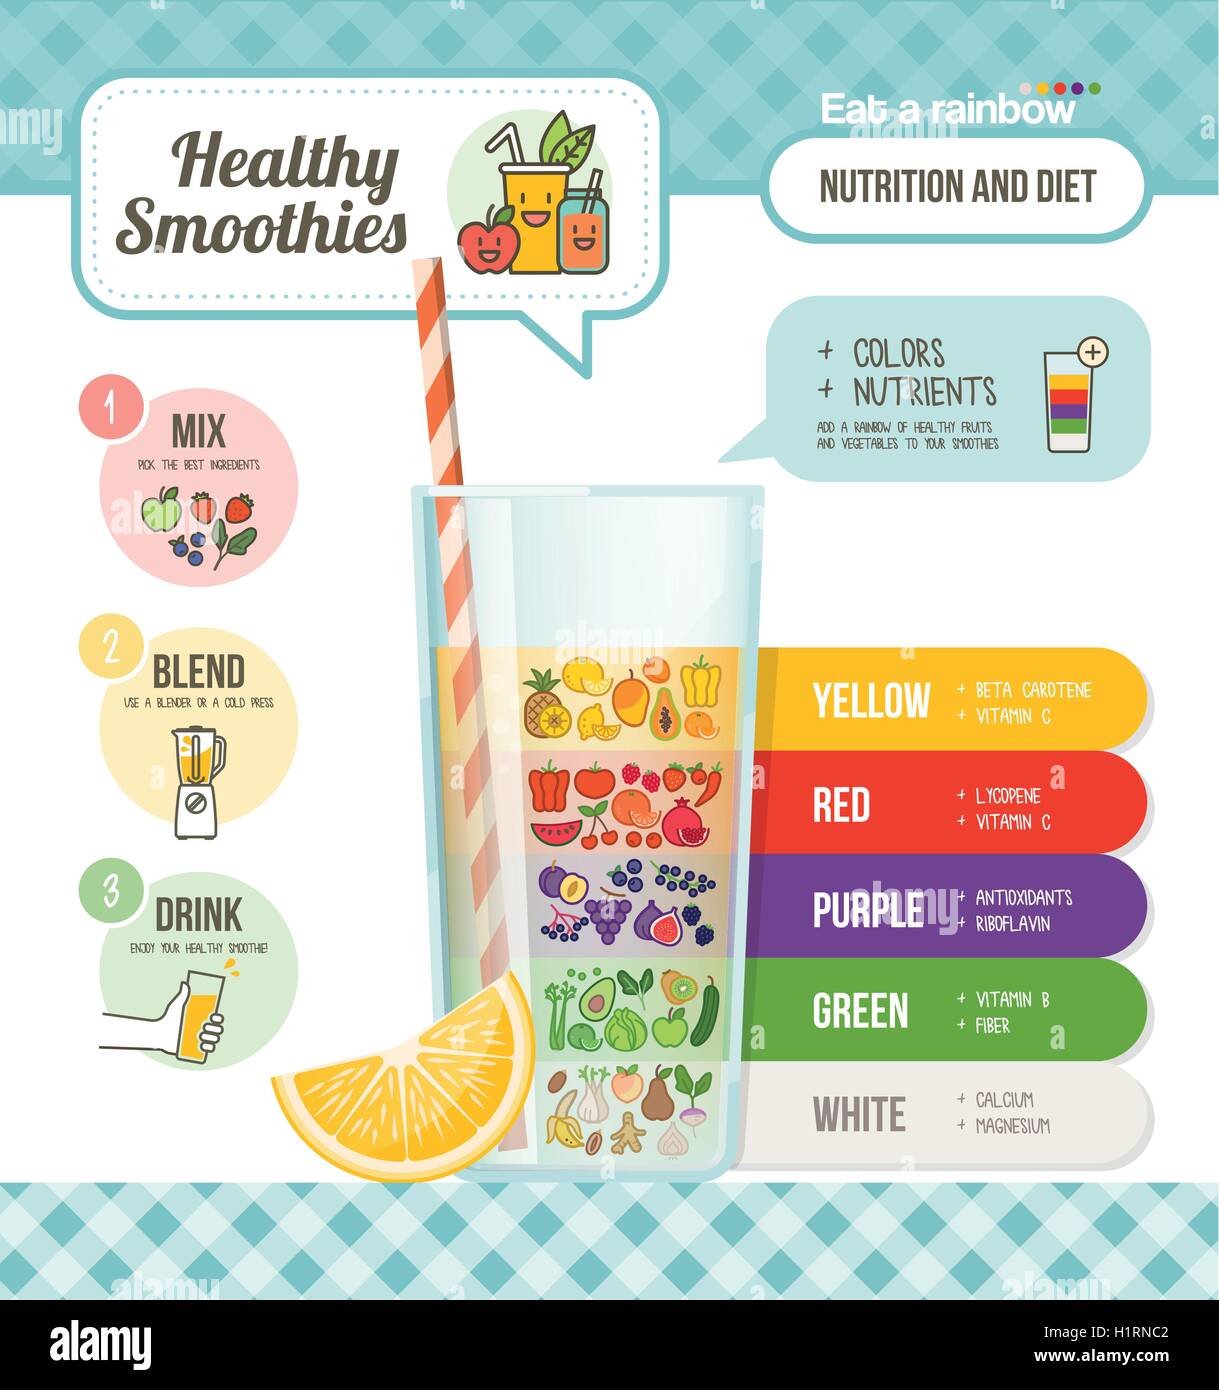 Einen Regenbogen von bunten gesundes Obst und Gemüse, Lebensmittel Nährstoffe und Smoothies Vorbereitung Infografik zu essen Stock Vektor